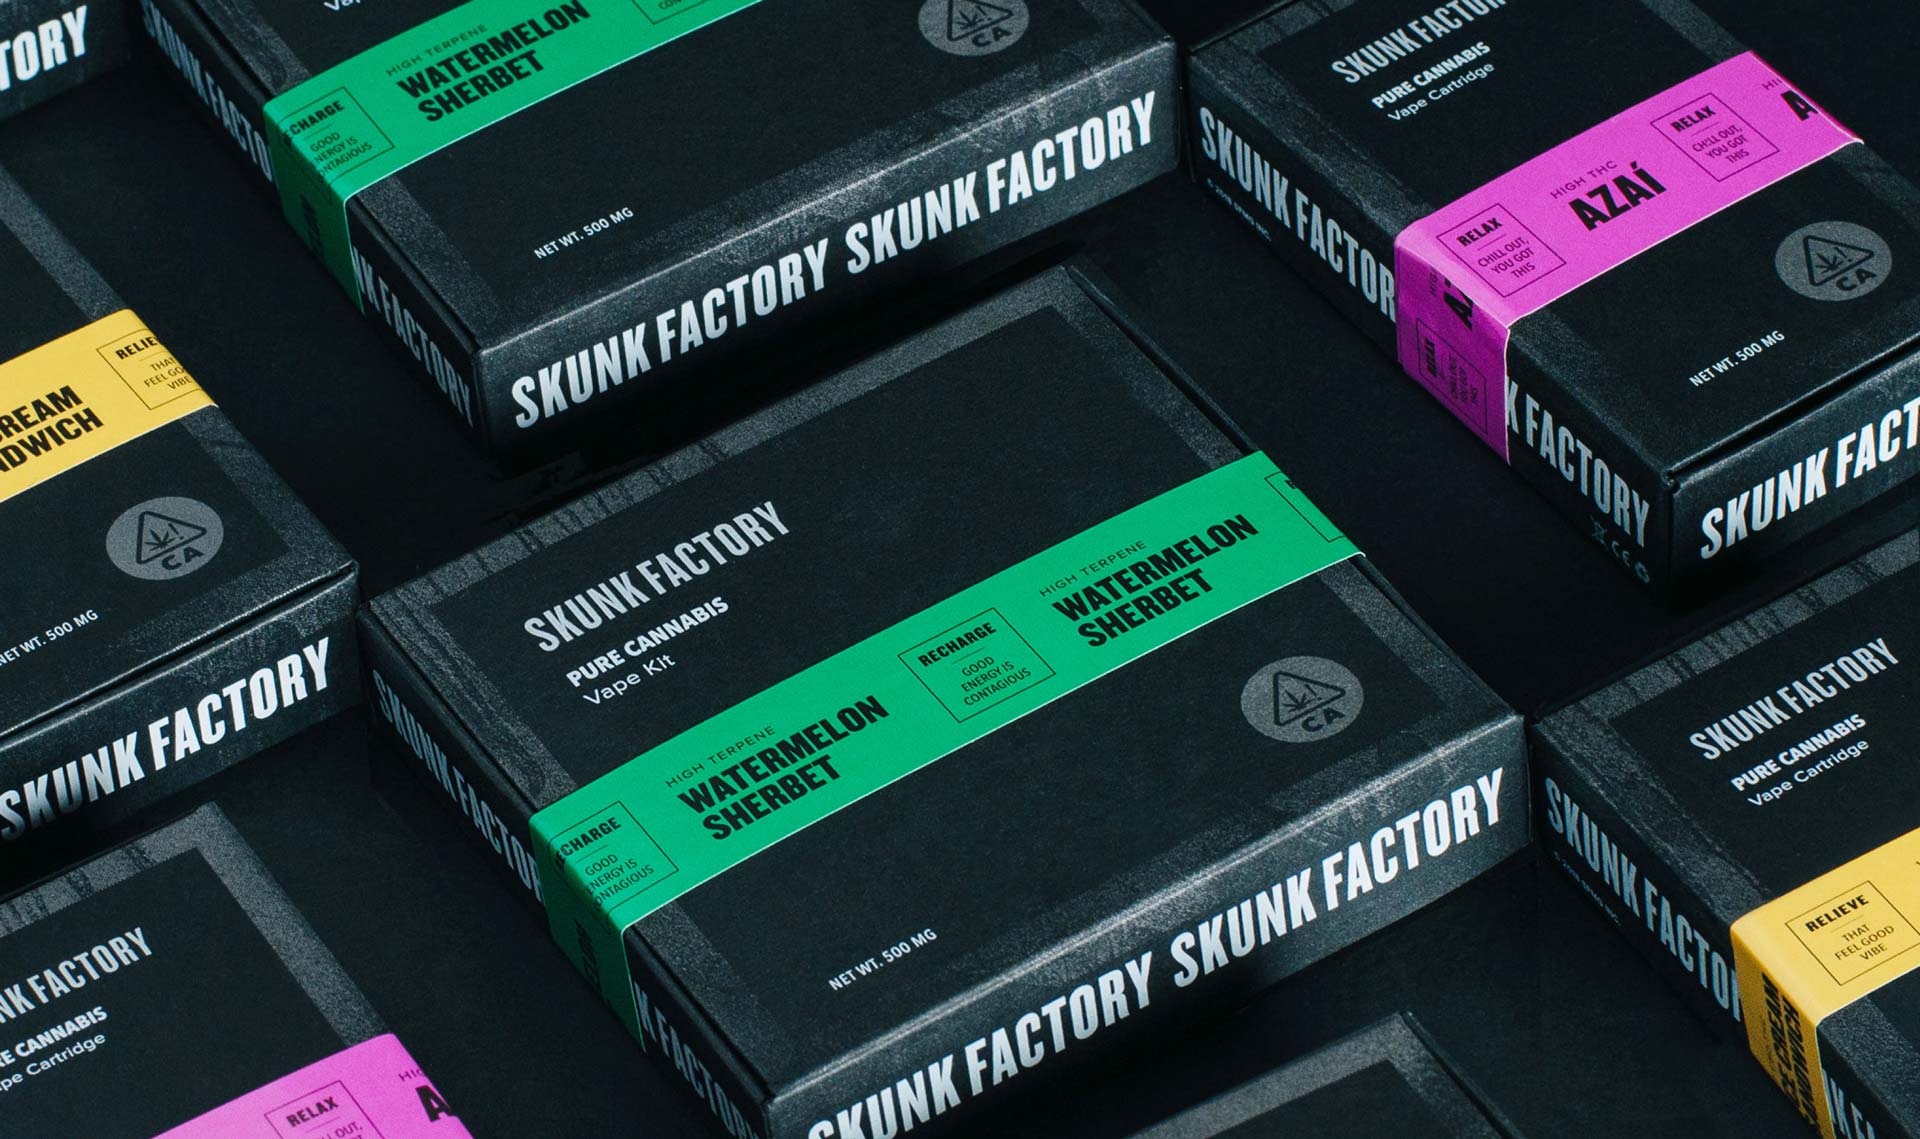 Skunk factory packaging - Noise 13